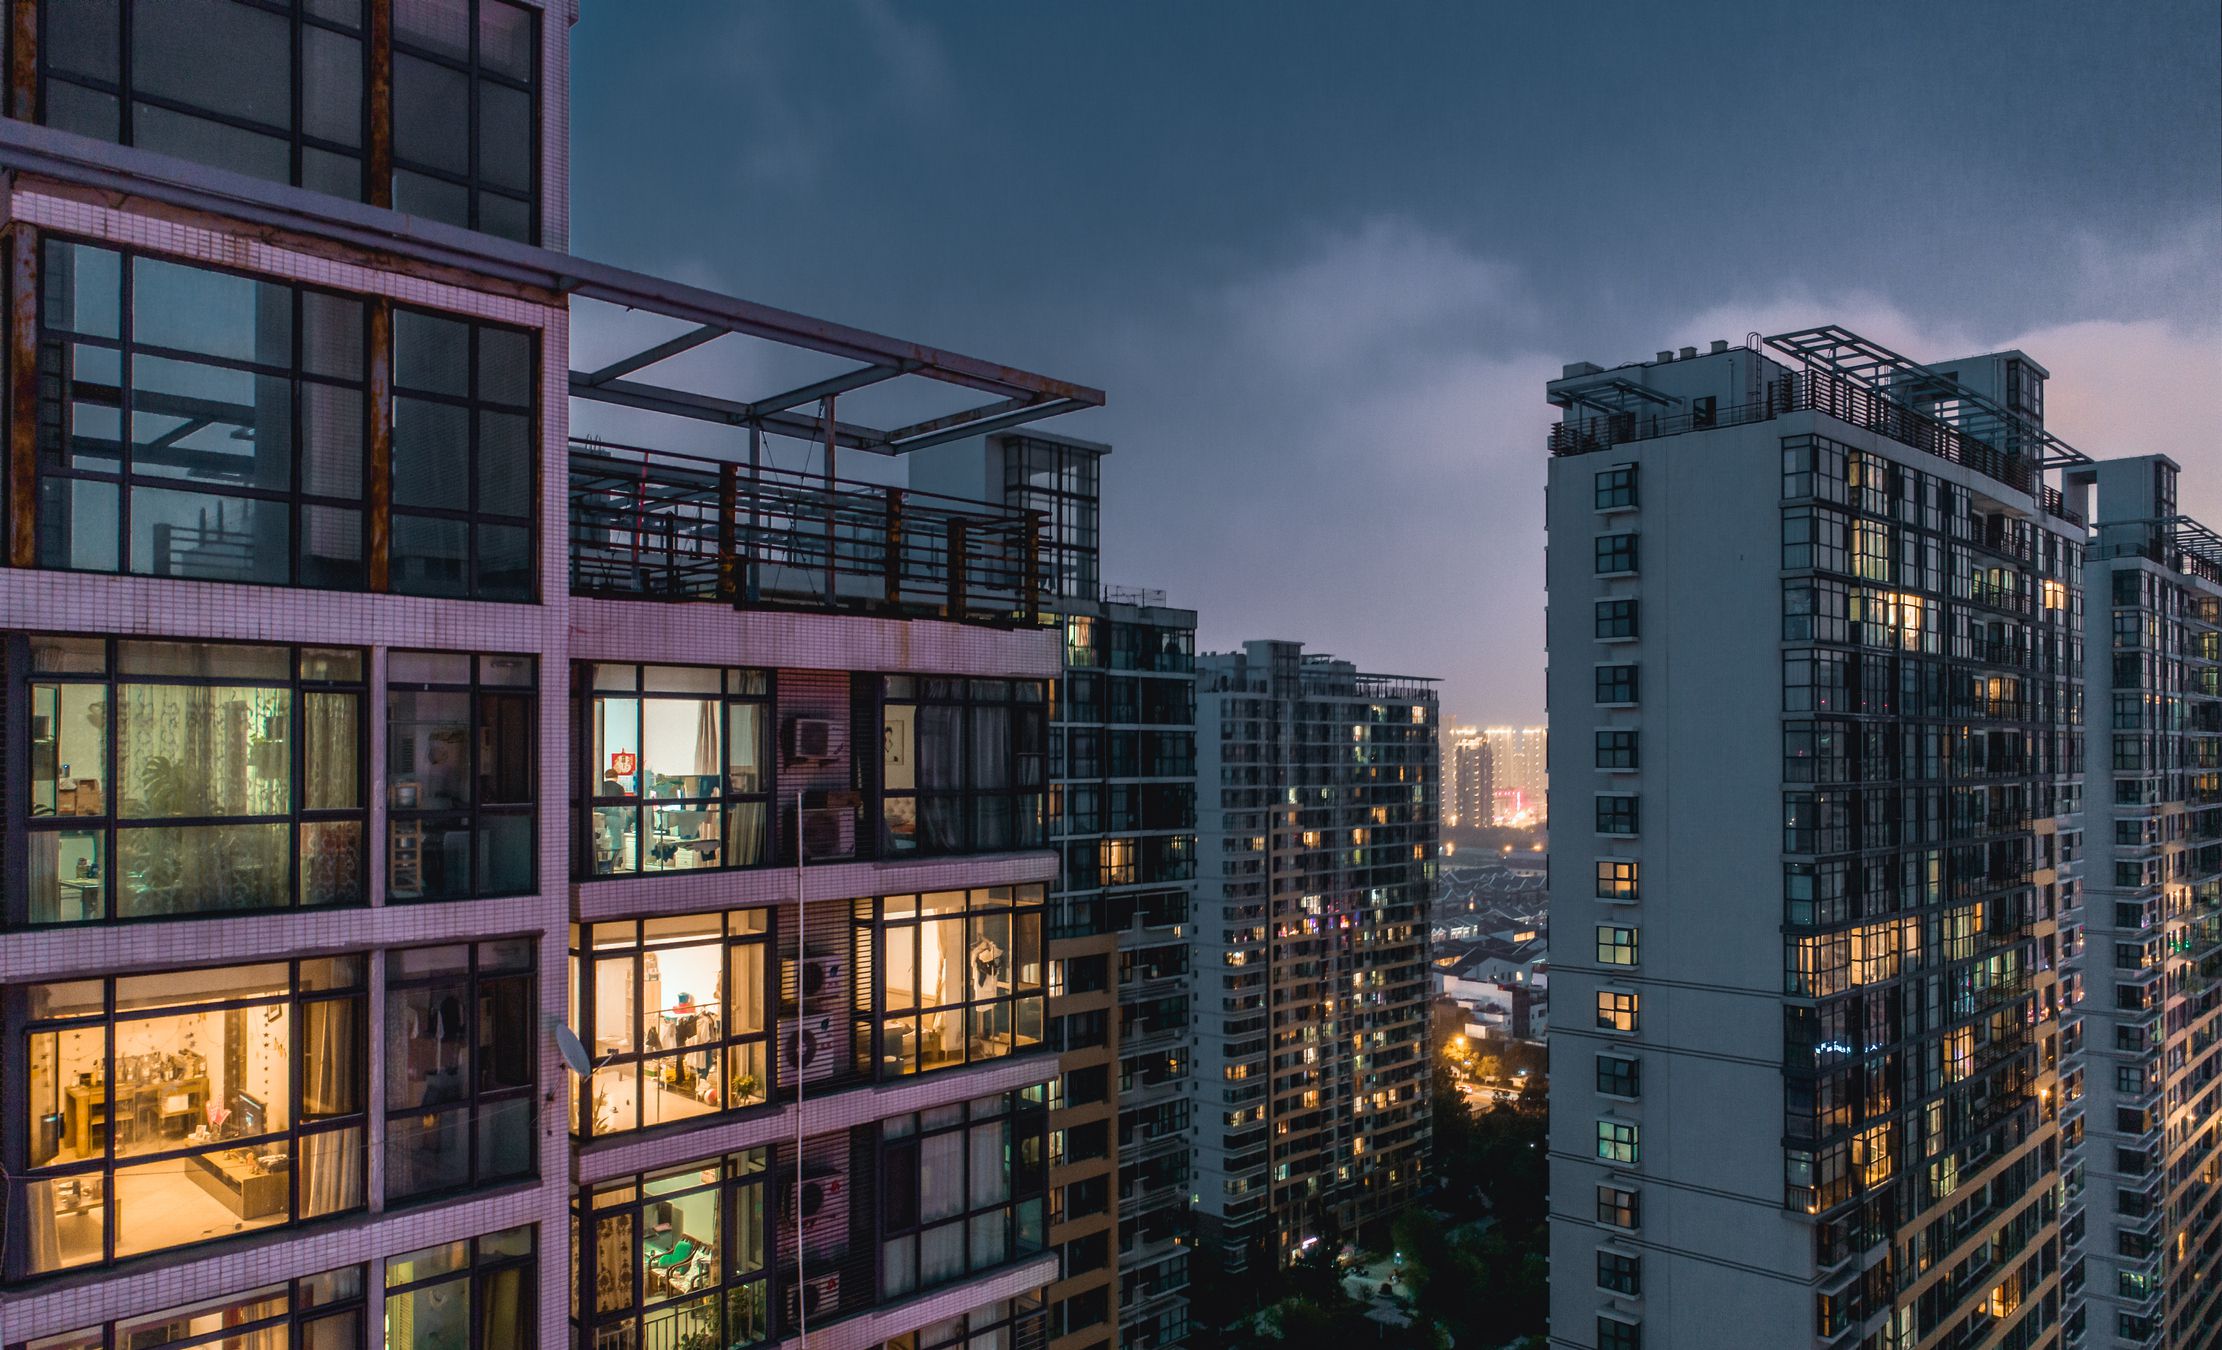 singapore property for sale condominium